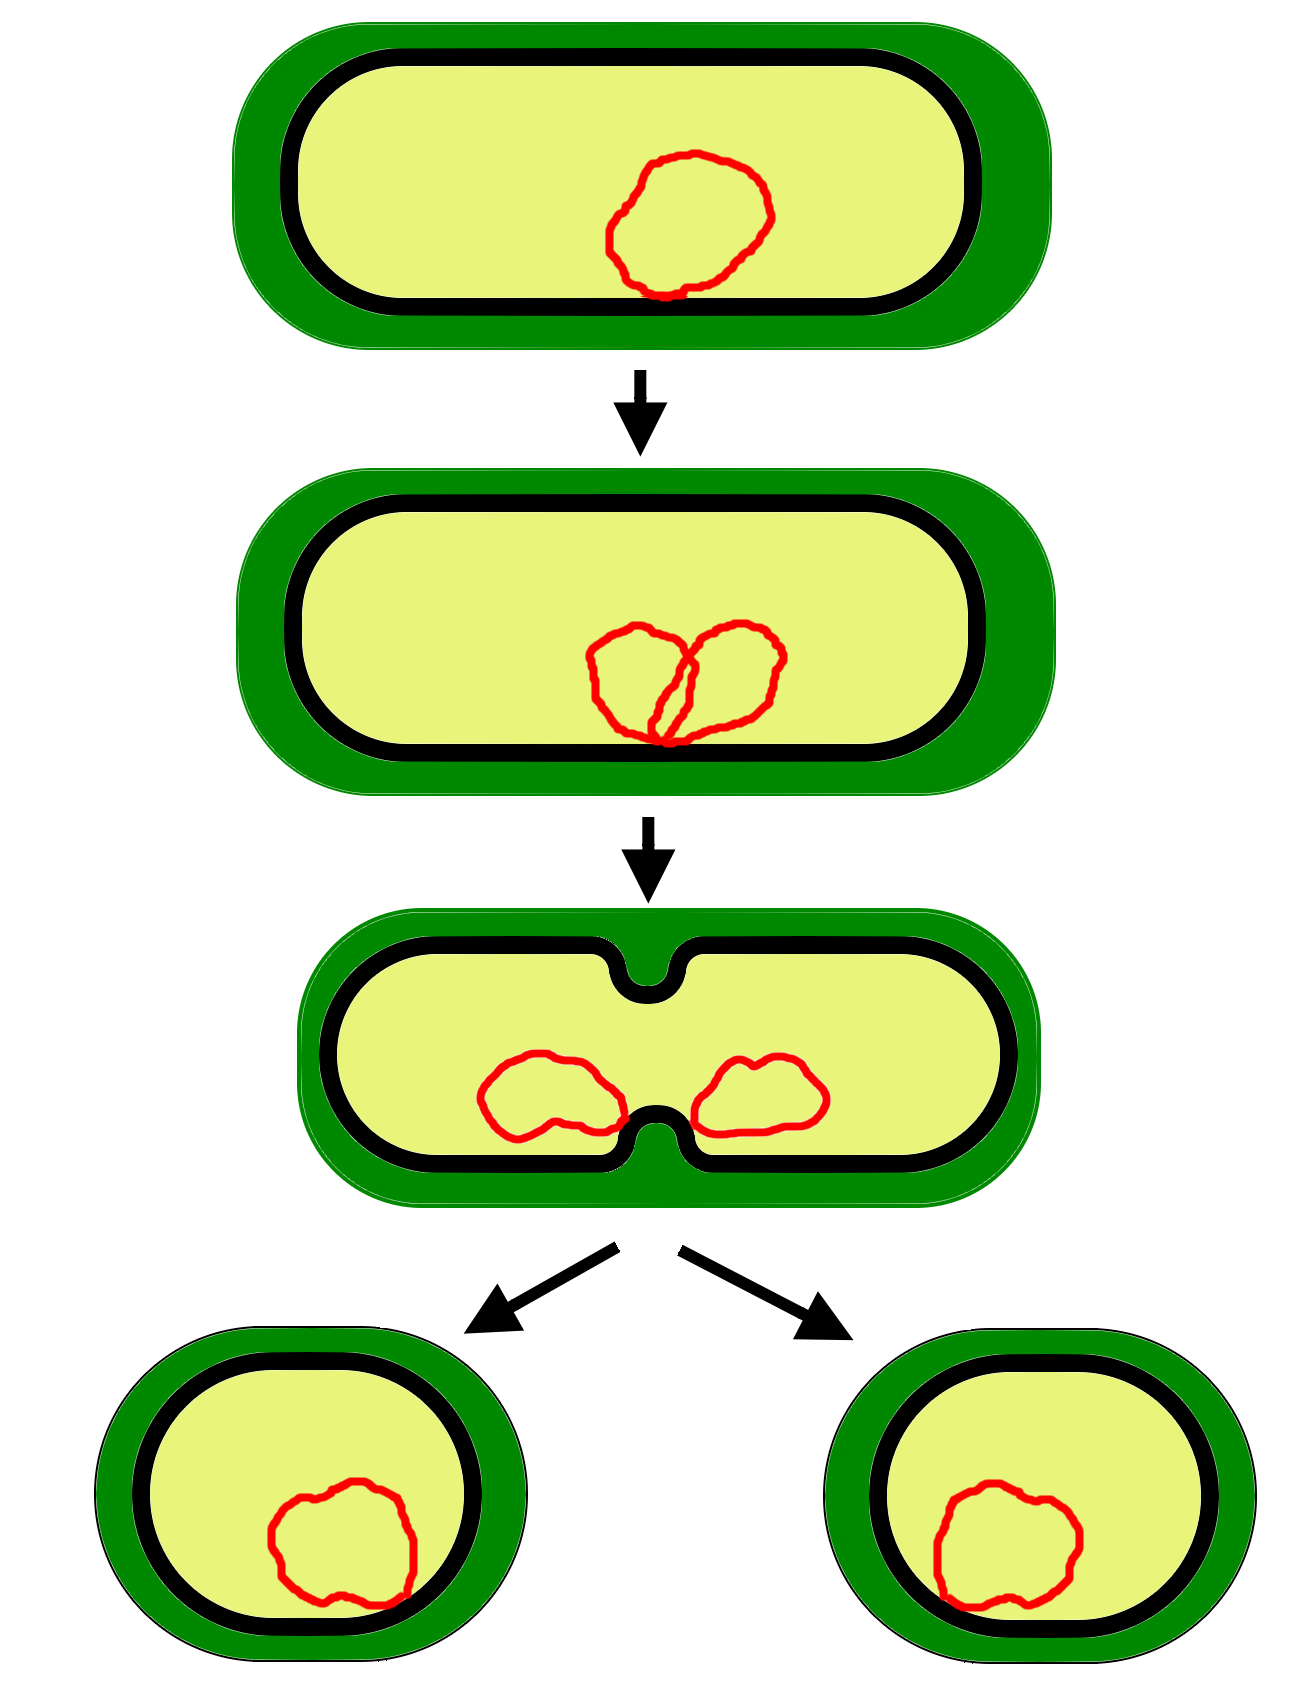 Деление клетки пополам. Схема бинарного деления бактериальной клетки. Бинарное деление бактерий схема. Схема деления прокариотической клетки. Размножение бактерий схема.